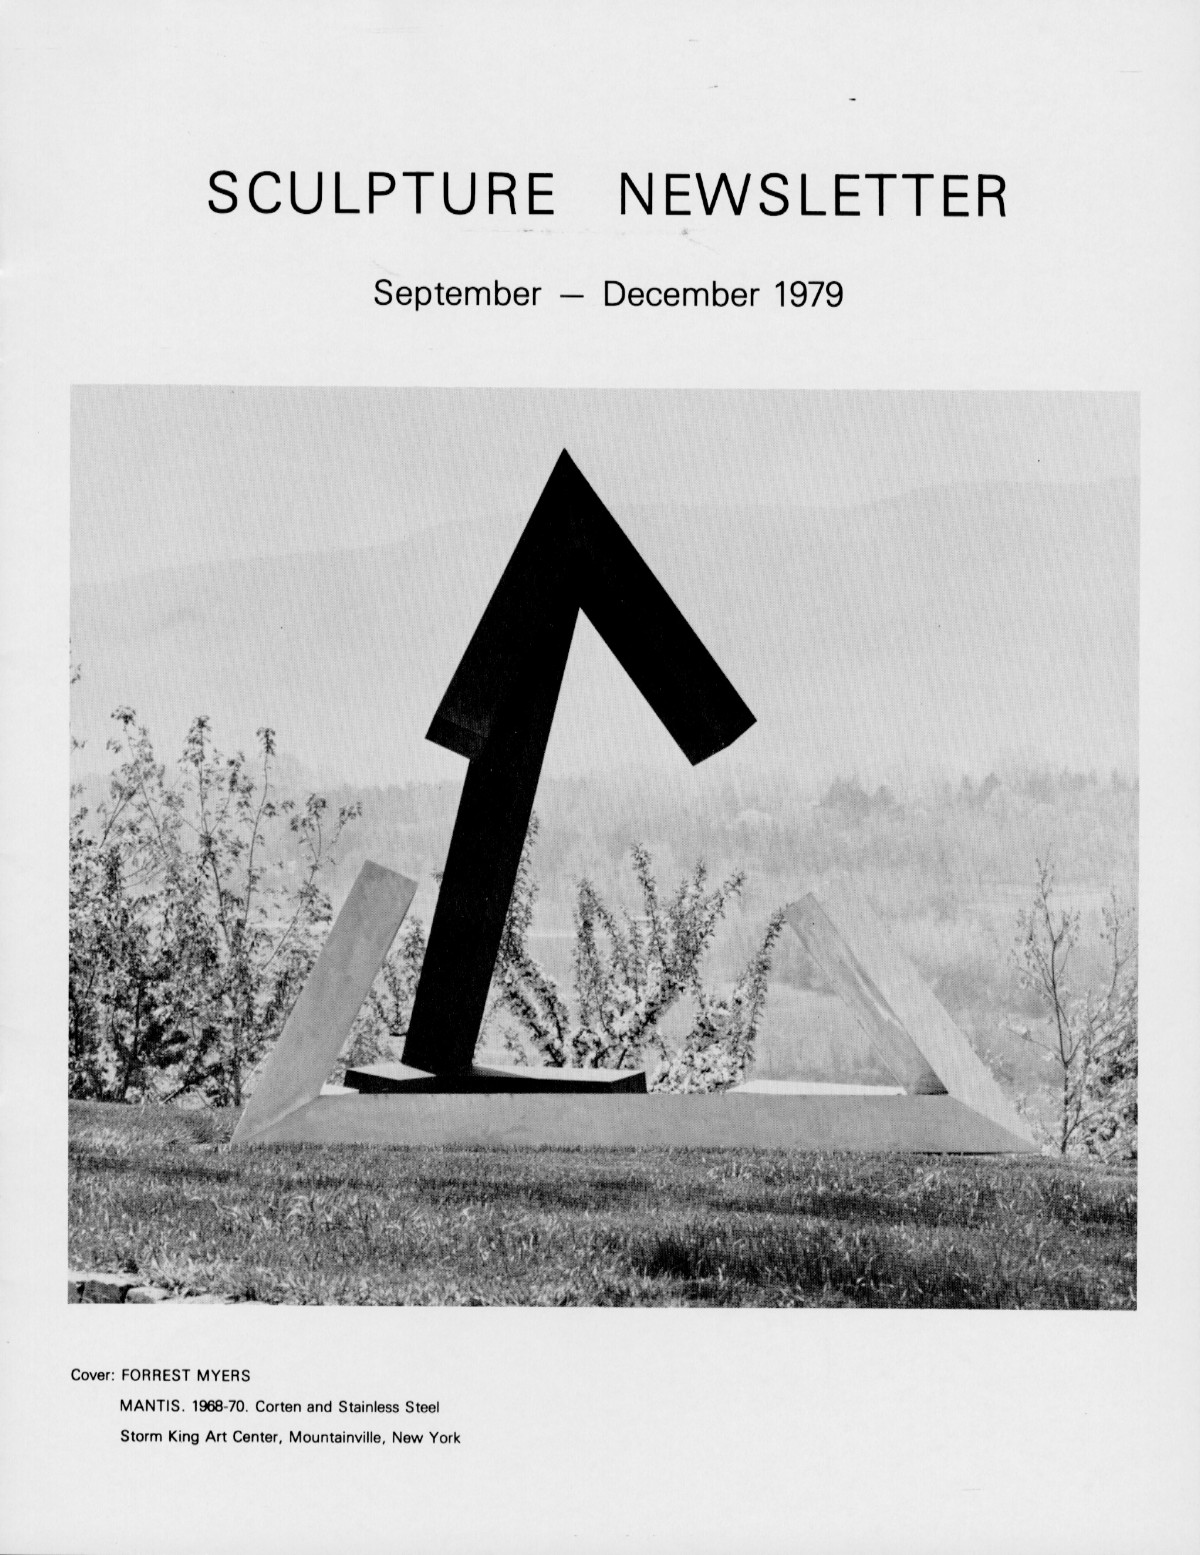 Storm King Art Center Newsletter, September - December 1979